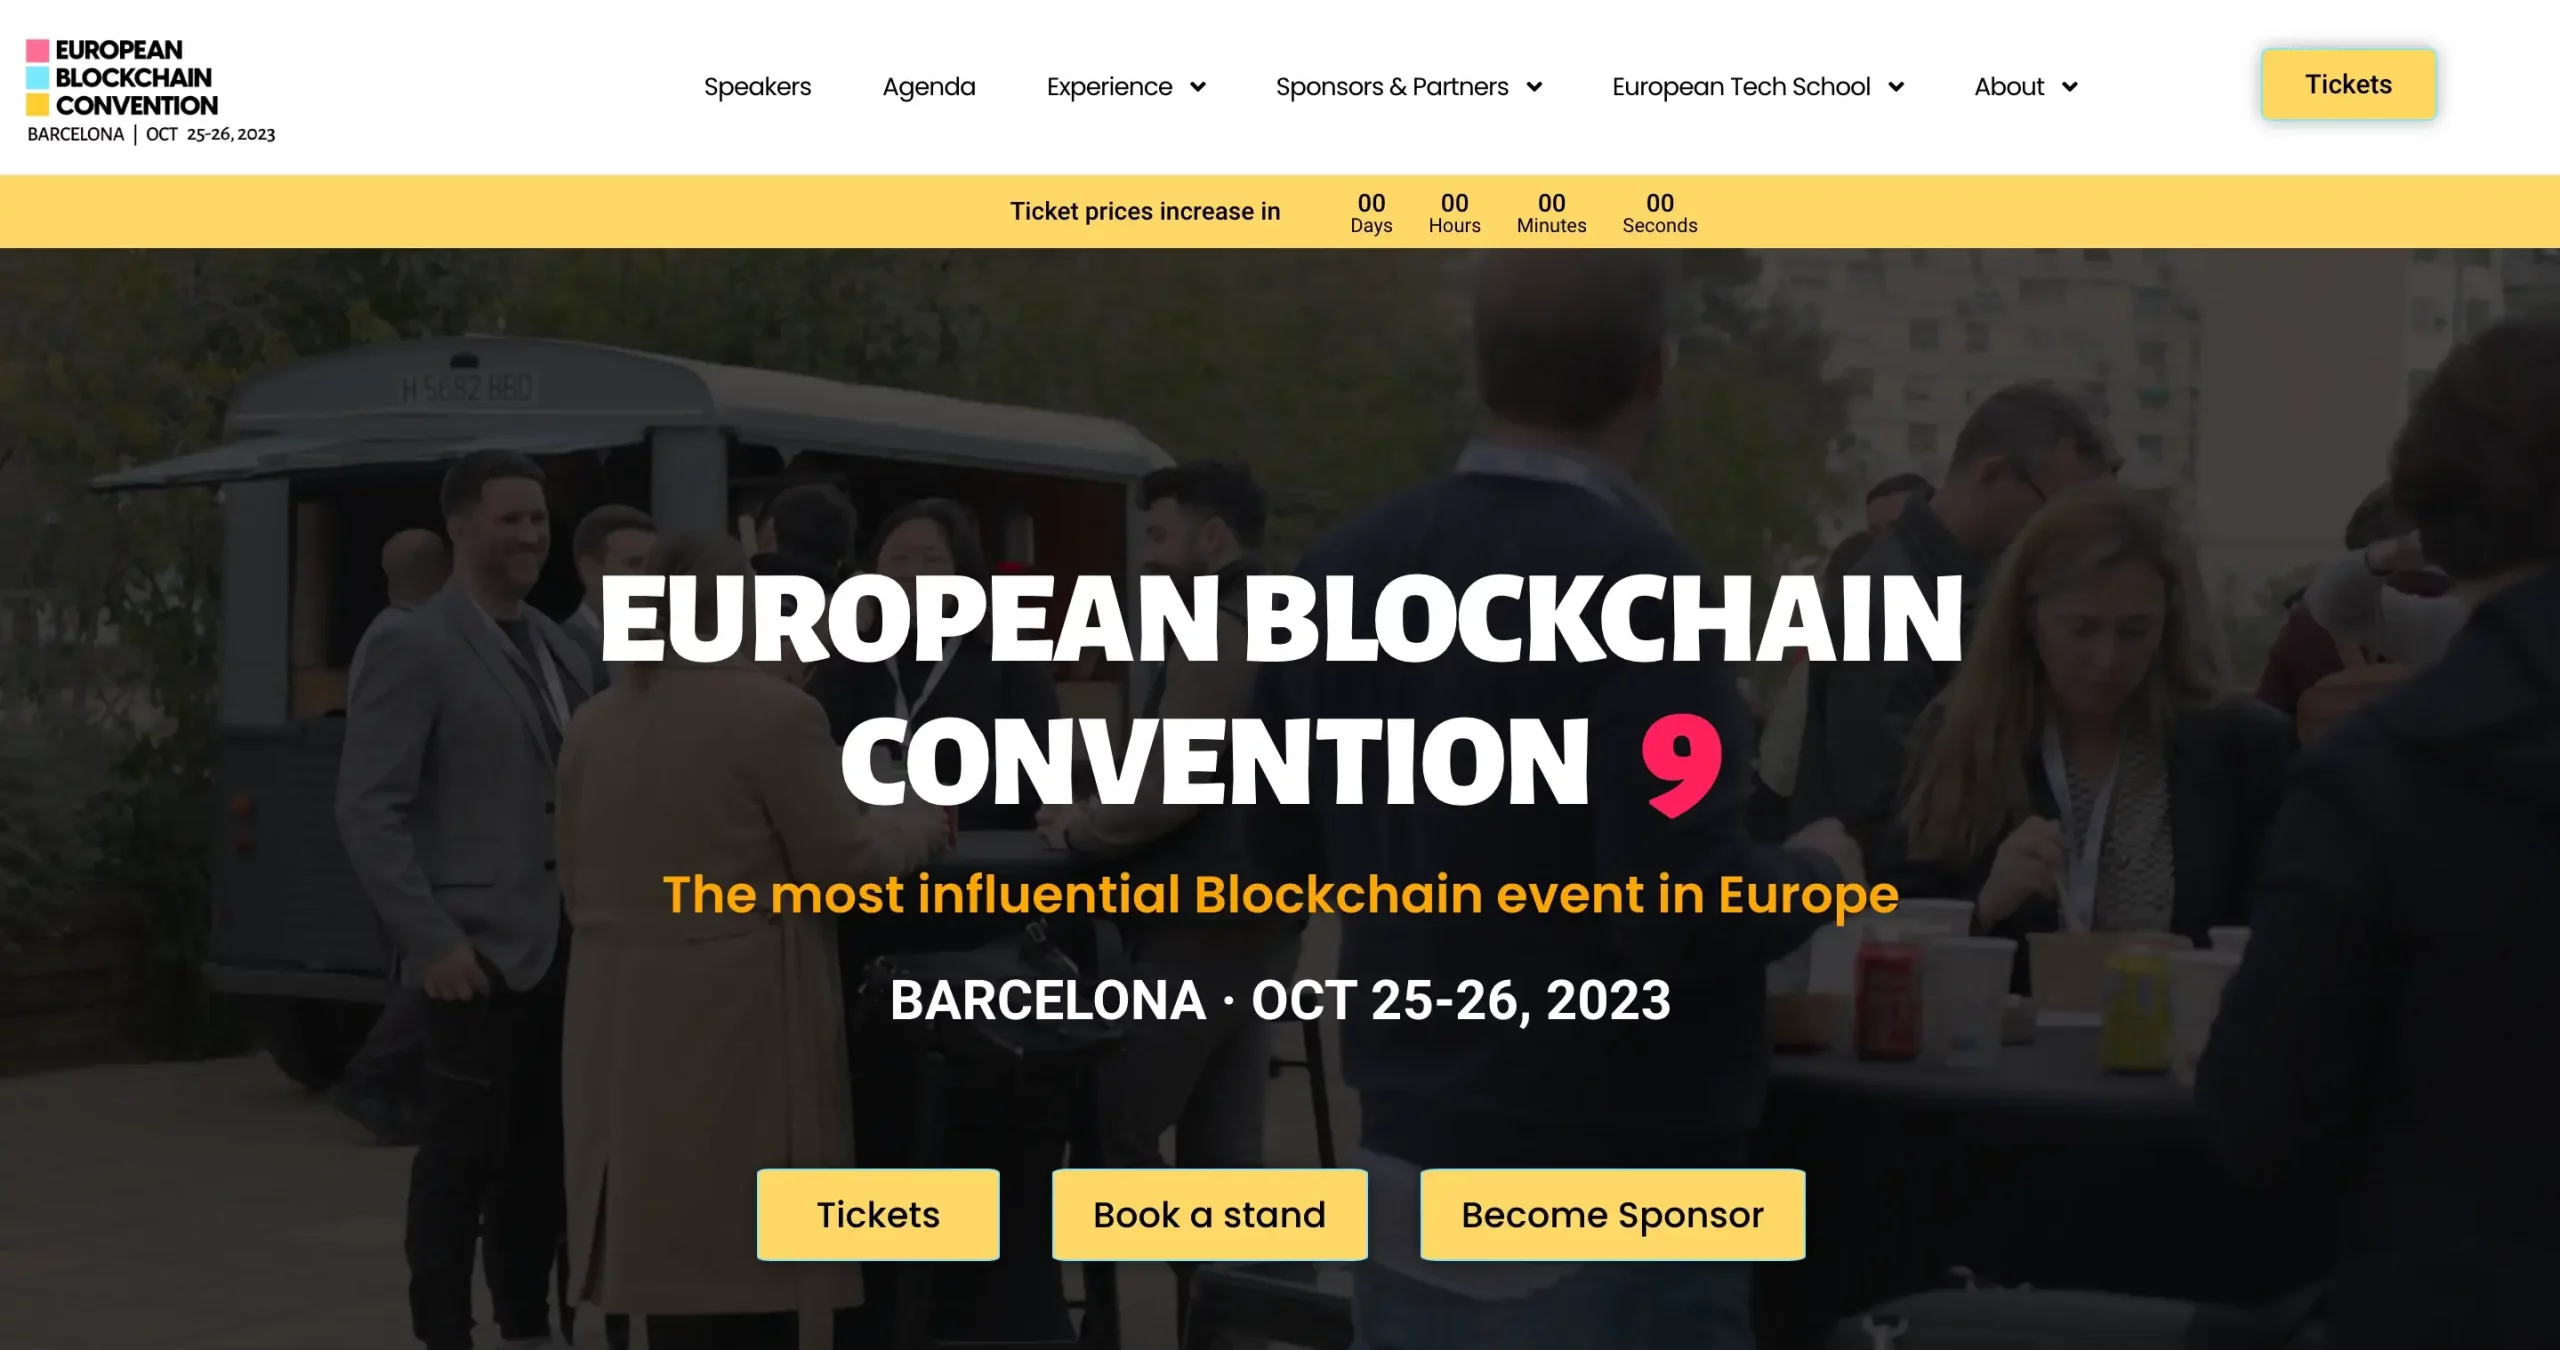 4. European Blockchain Convention